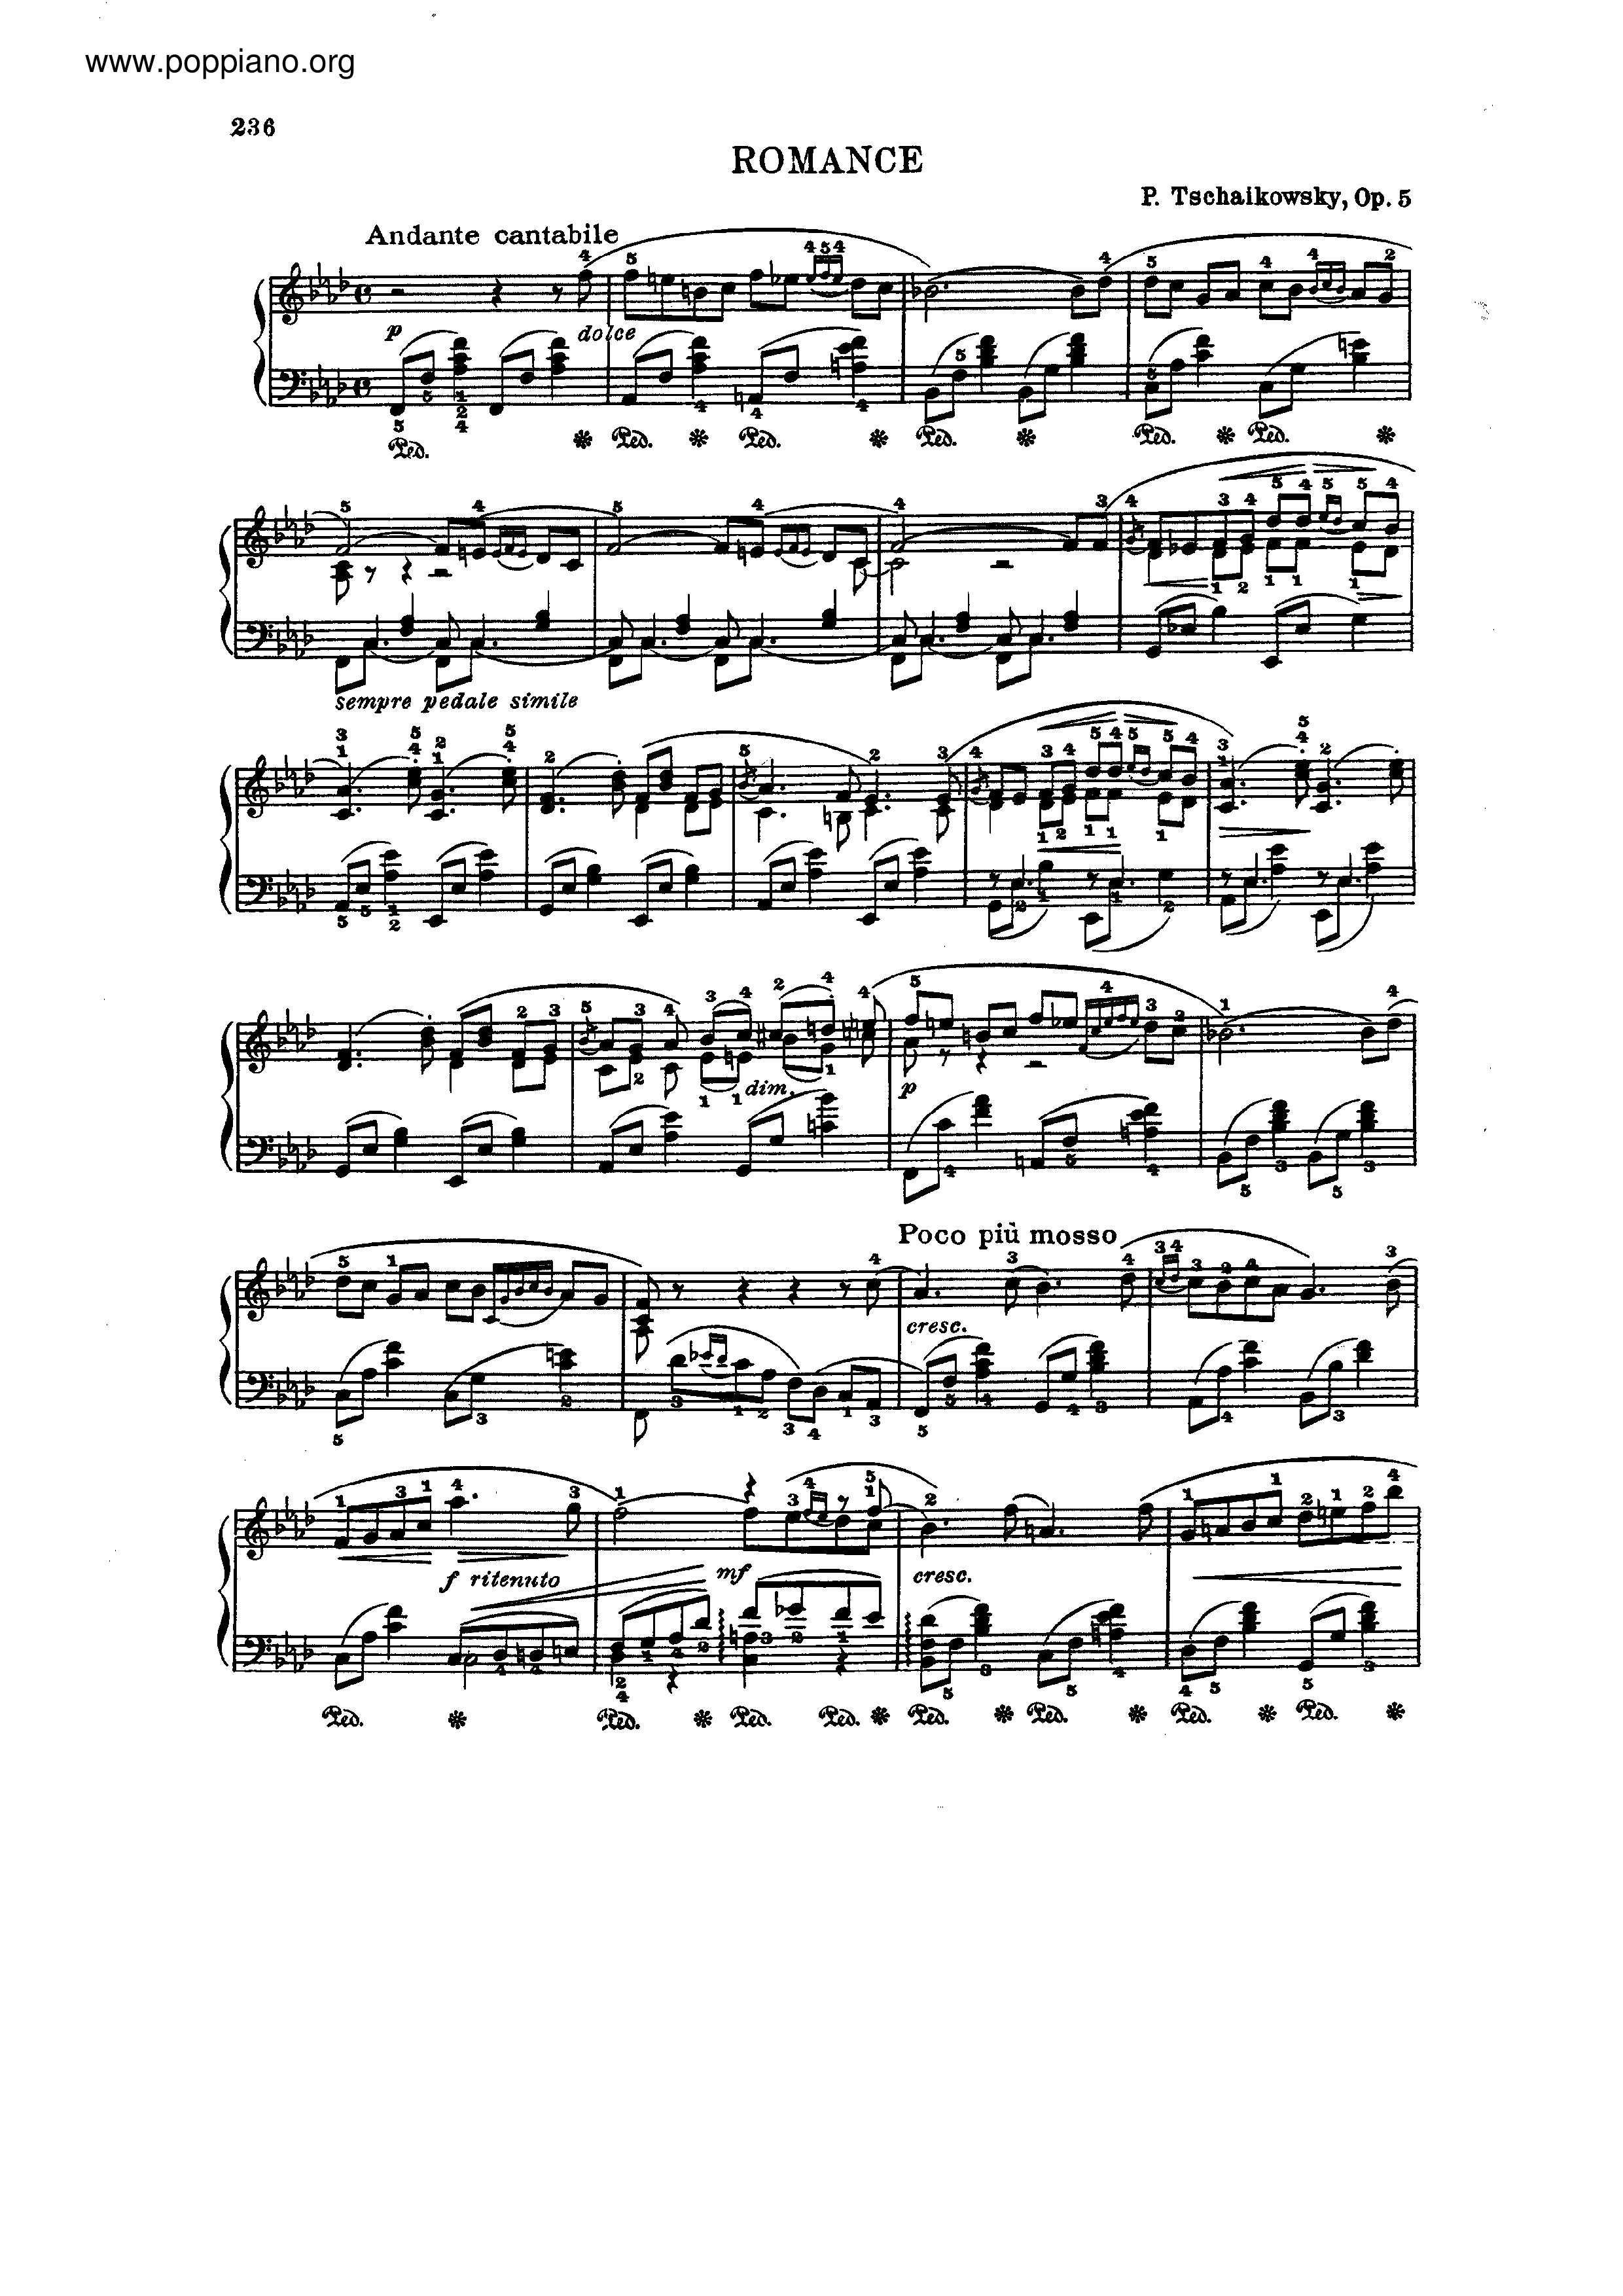 Romance, Op.5 Score